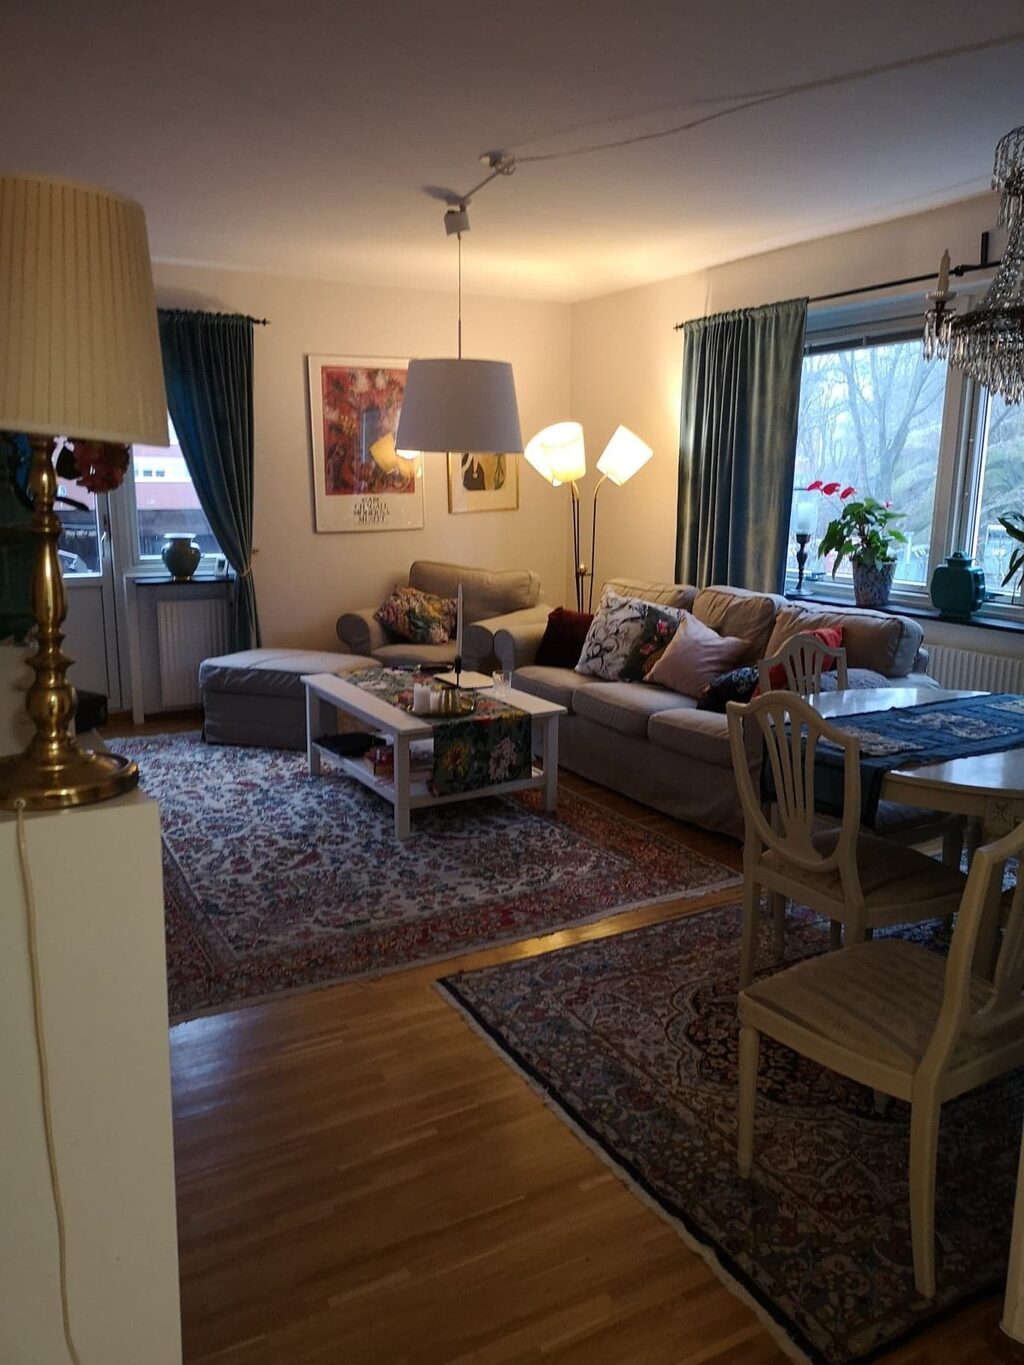 Lägenhetsbyte - Övre Besvärsgatan 1, 411 30 Göteborg